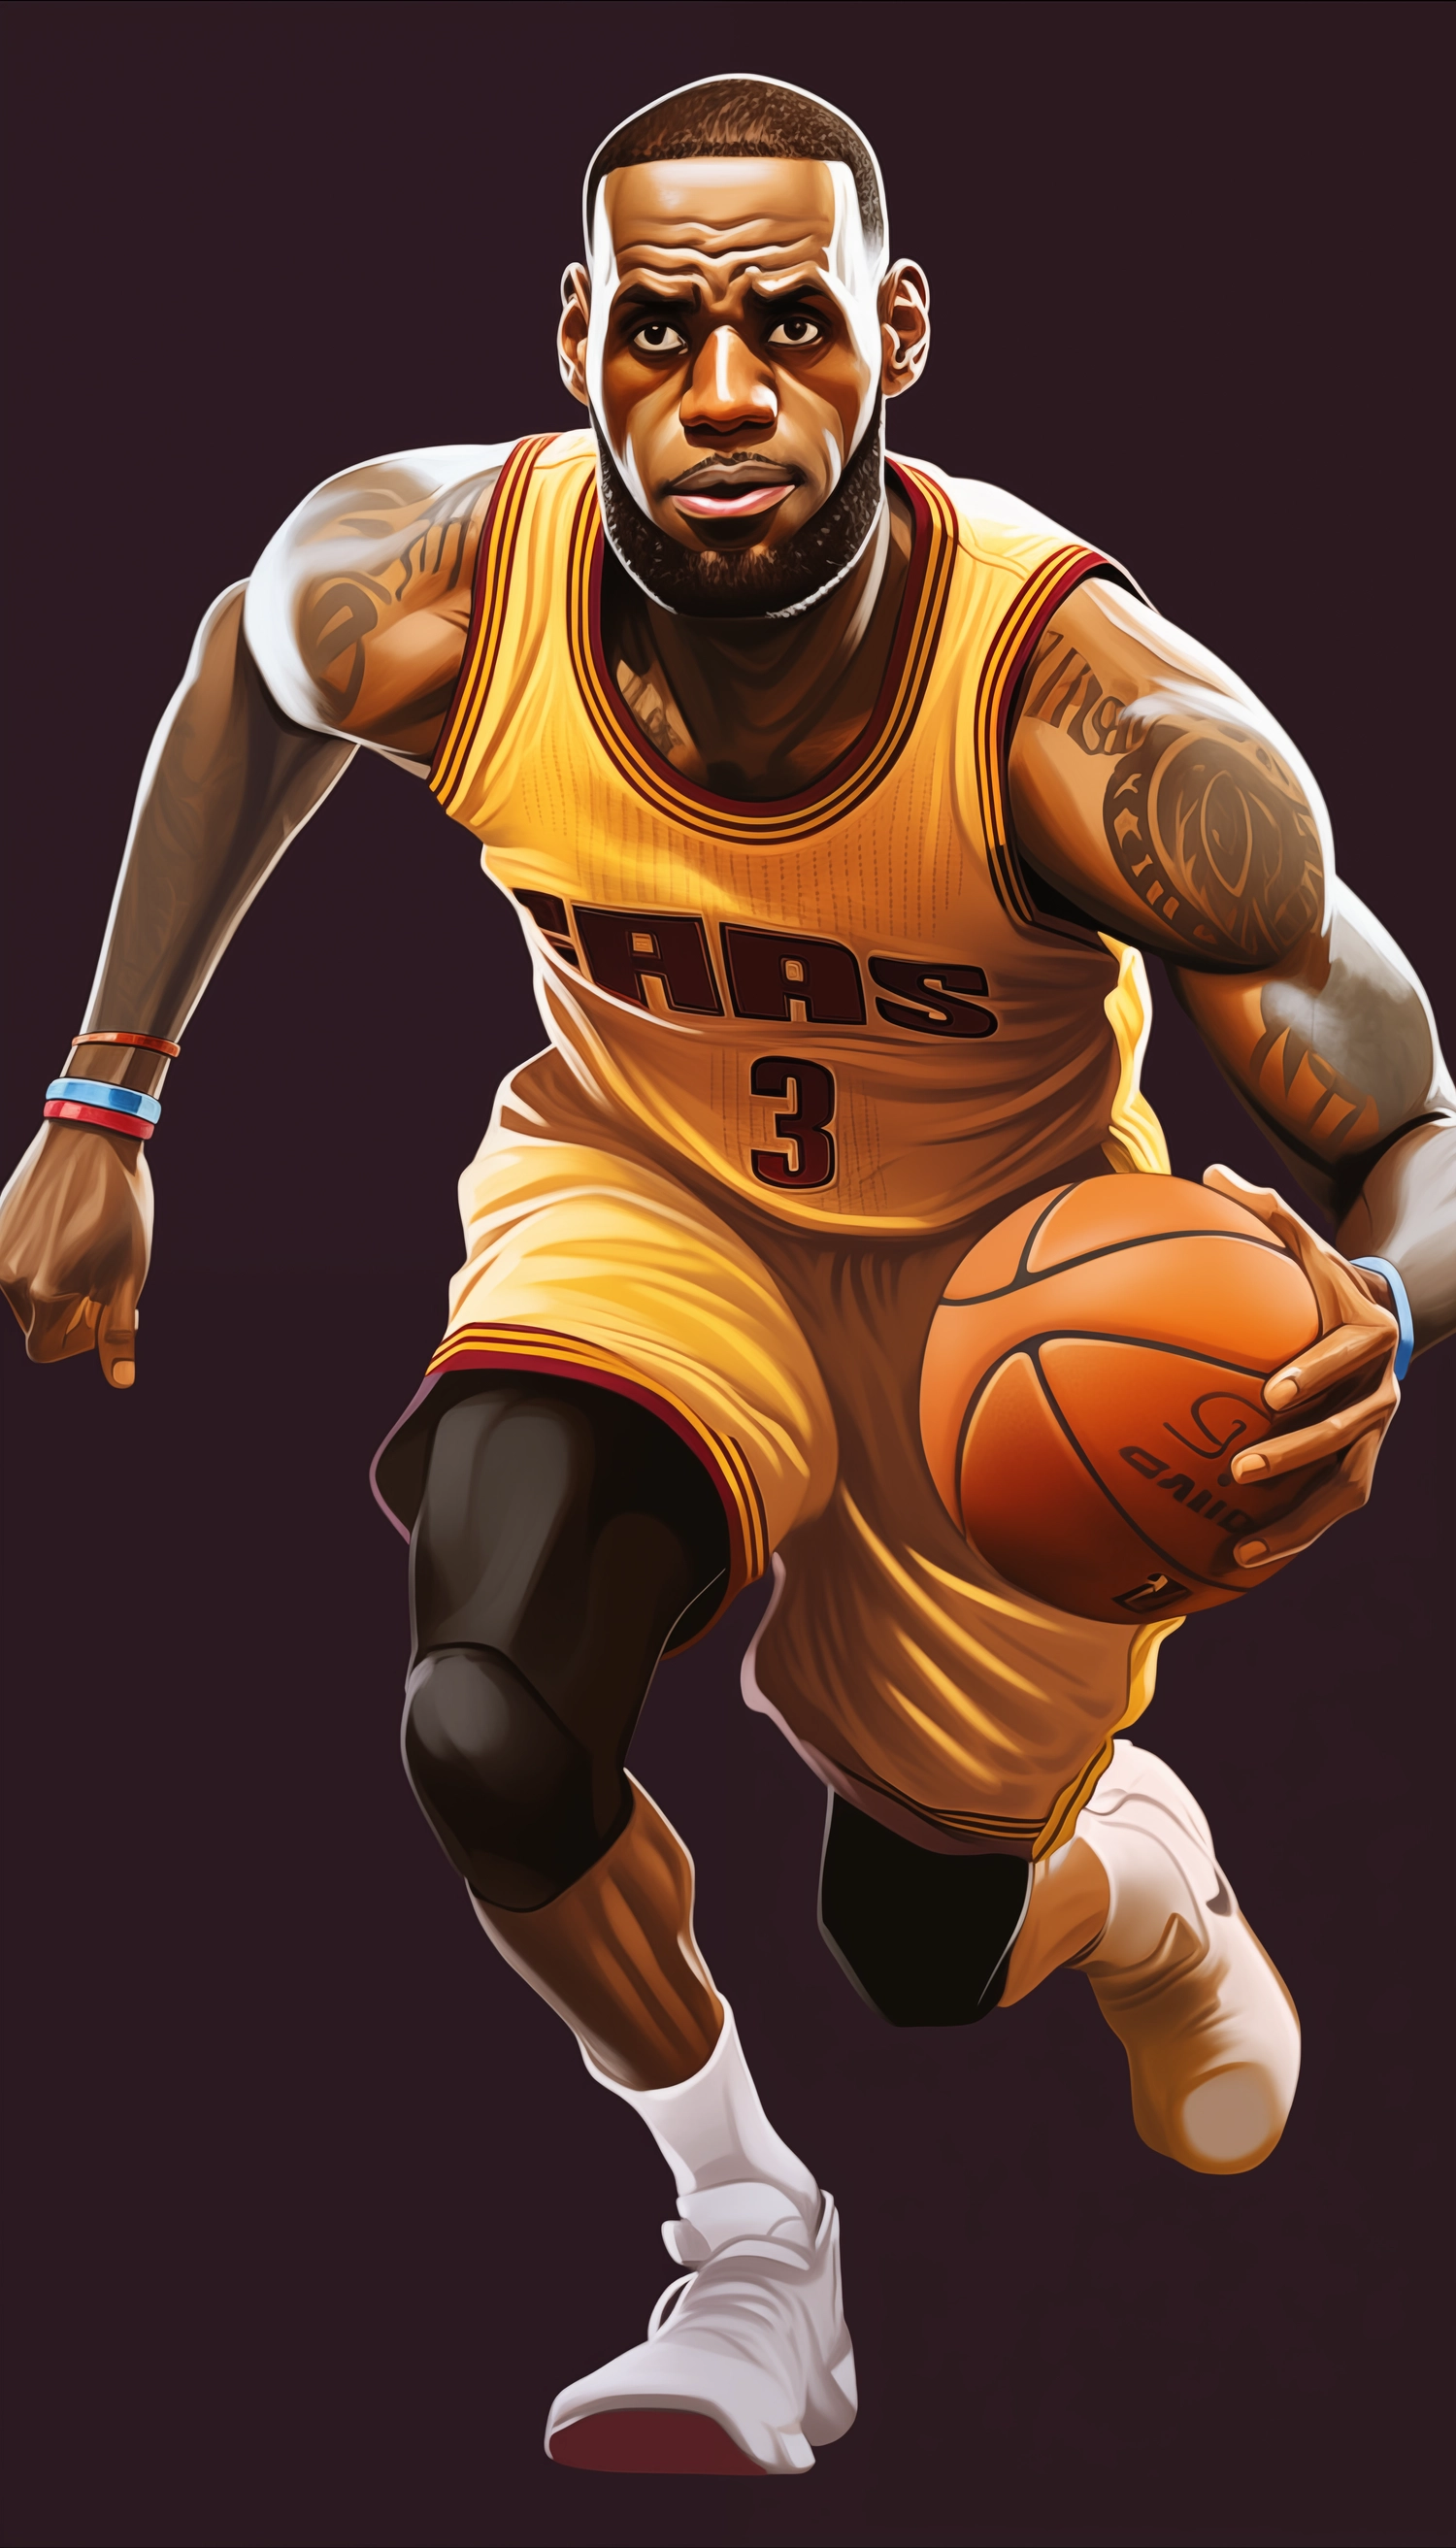 Cartoon of LeBron James playing basketball